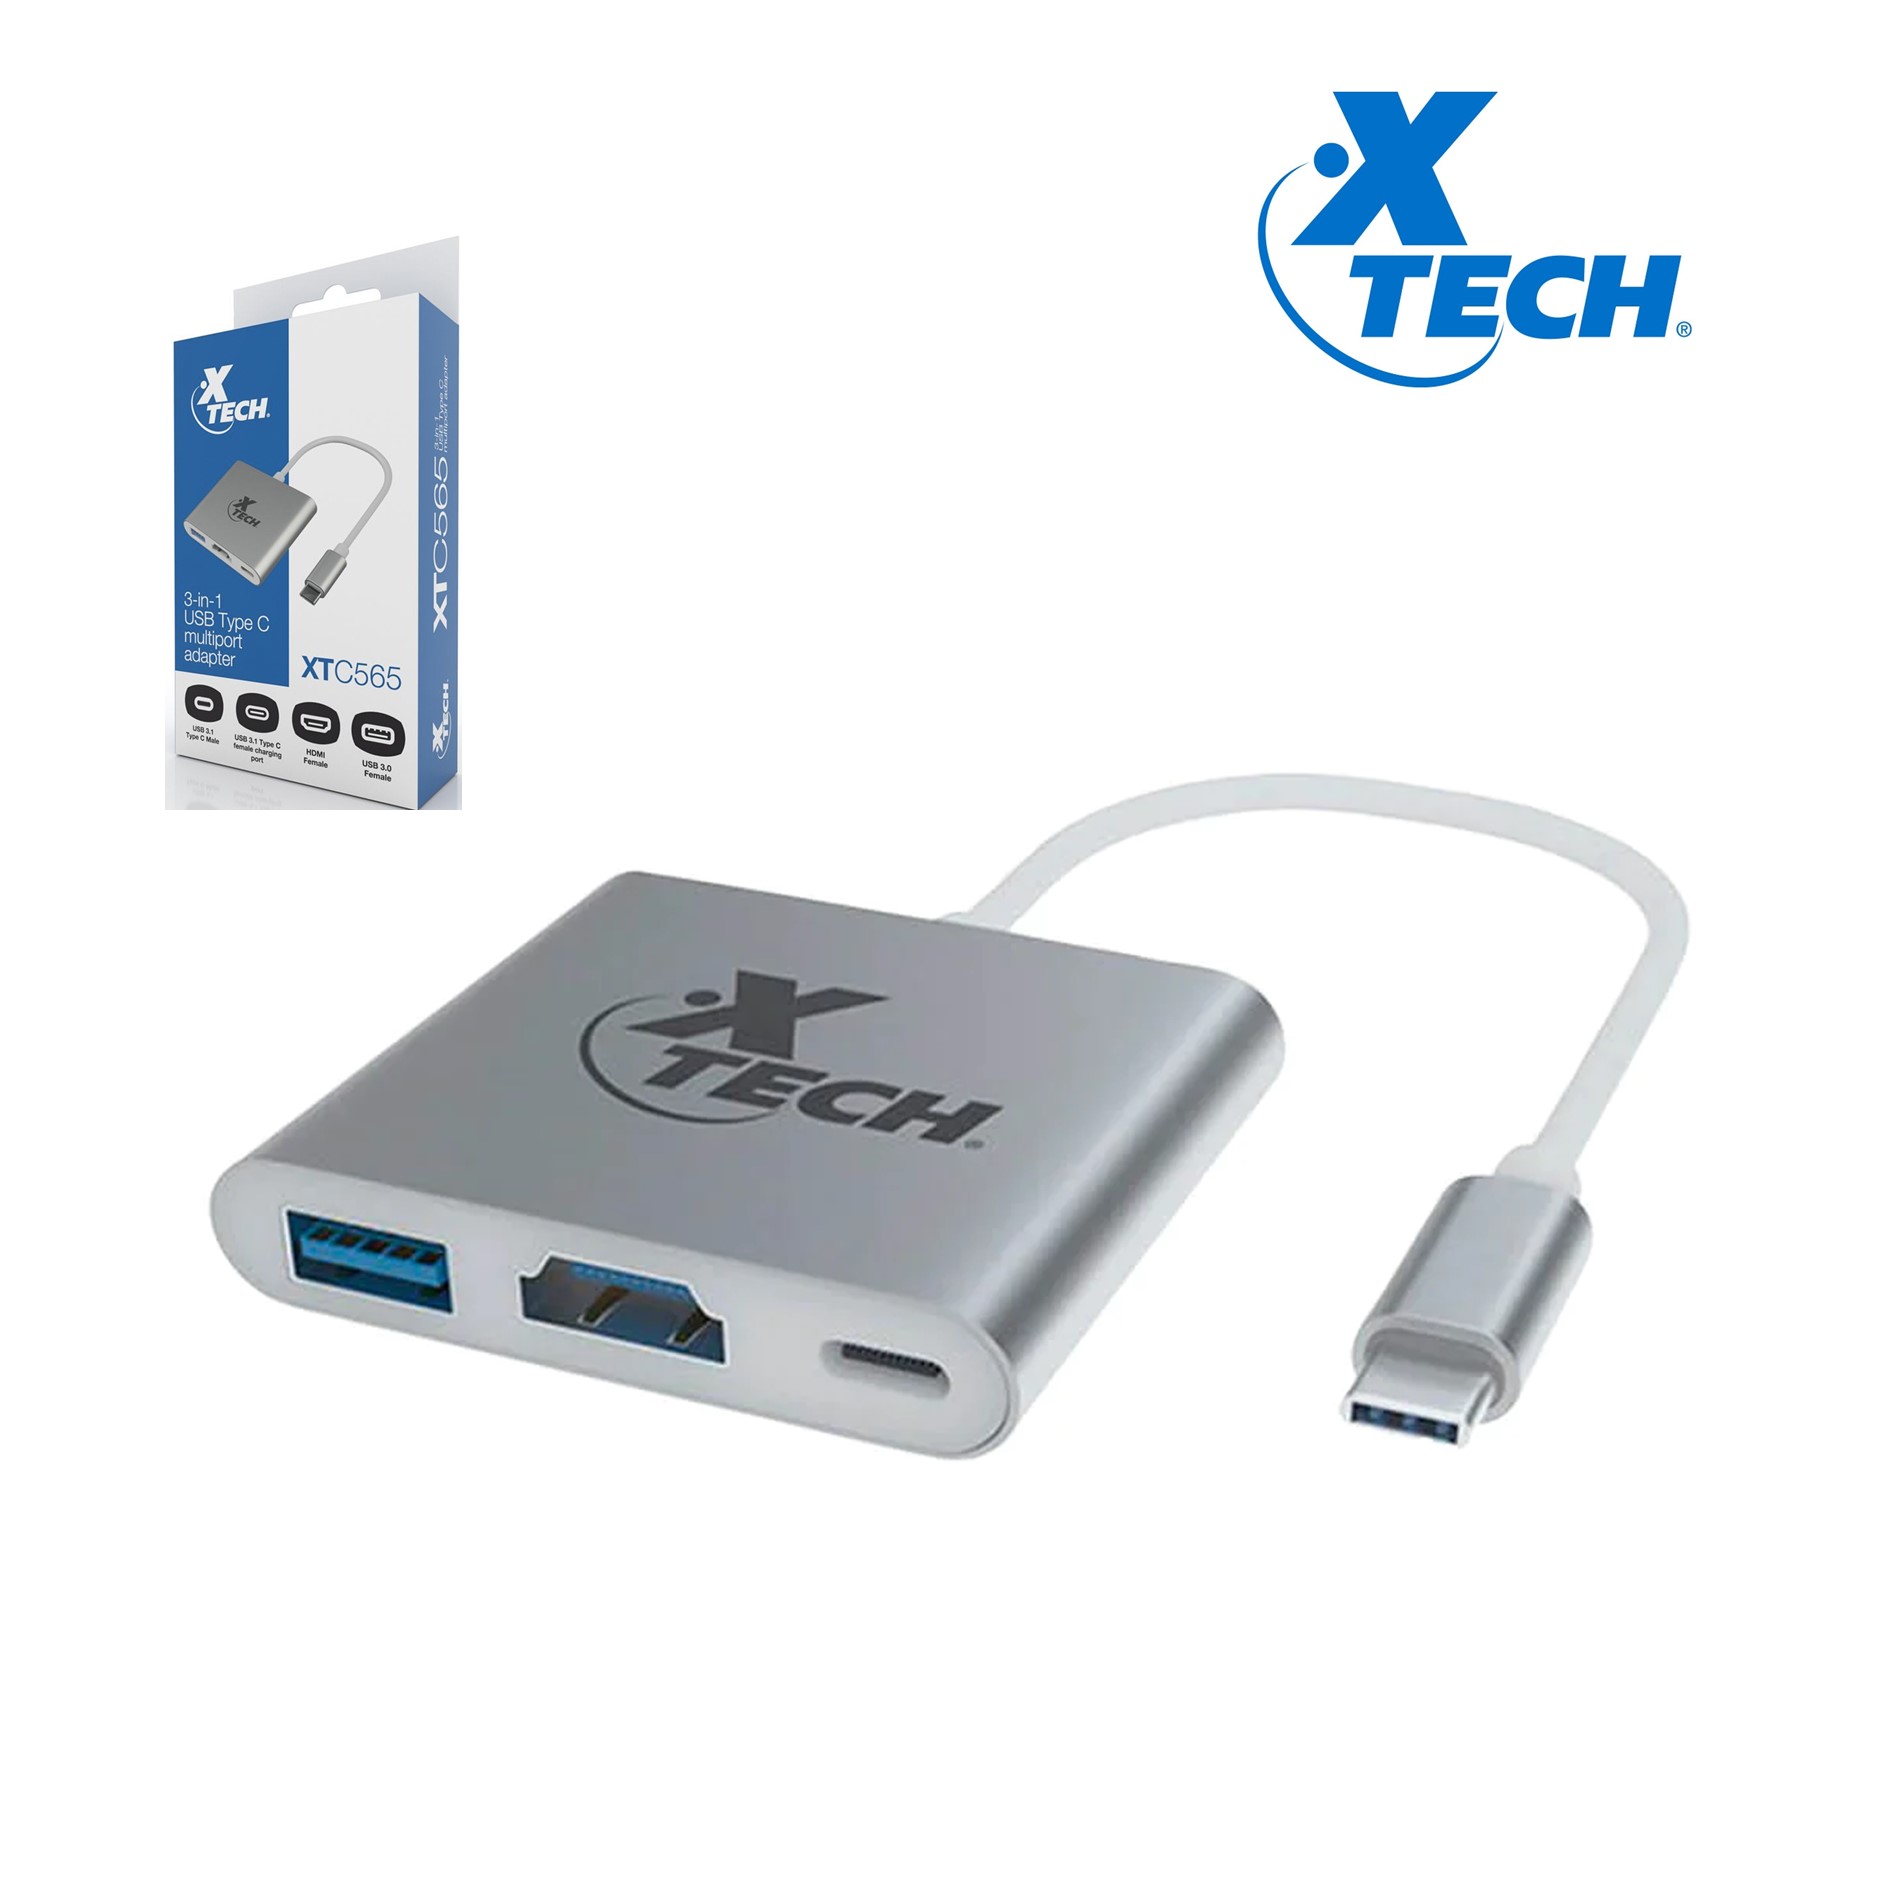 ADAPTADOR  XTECH  MULTIPUERTO USB TIPO C 3-EN-1, 30AWG, USB 3.0, 15CM (XTC-565)